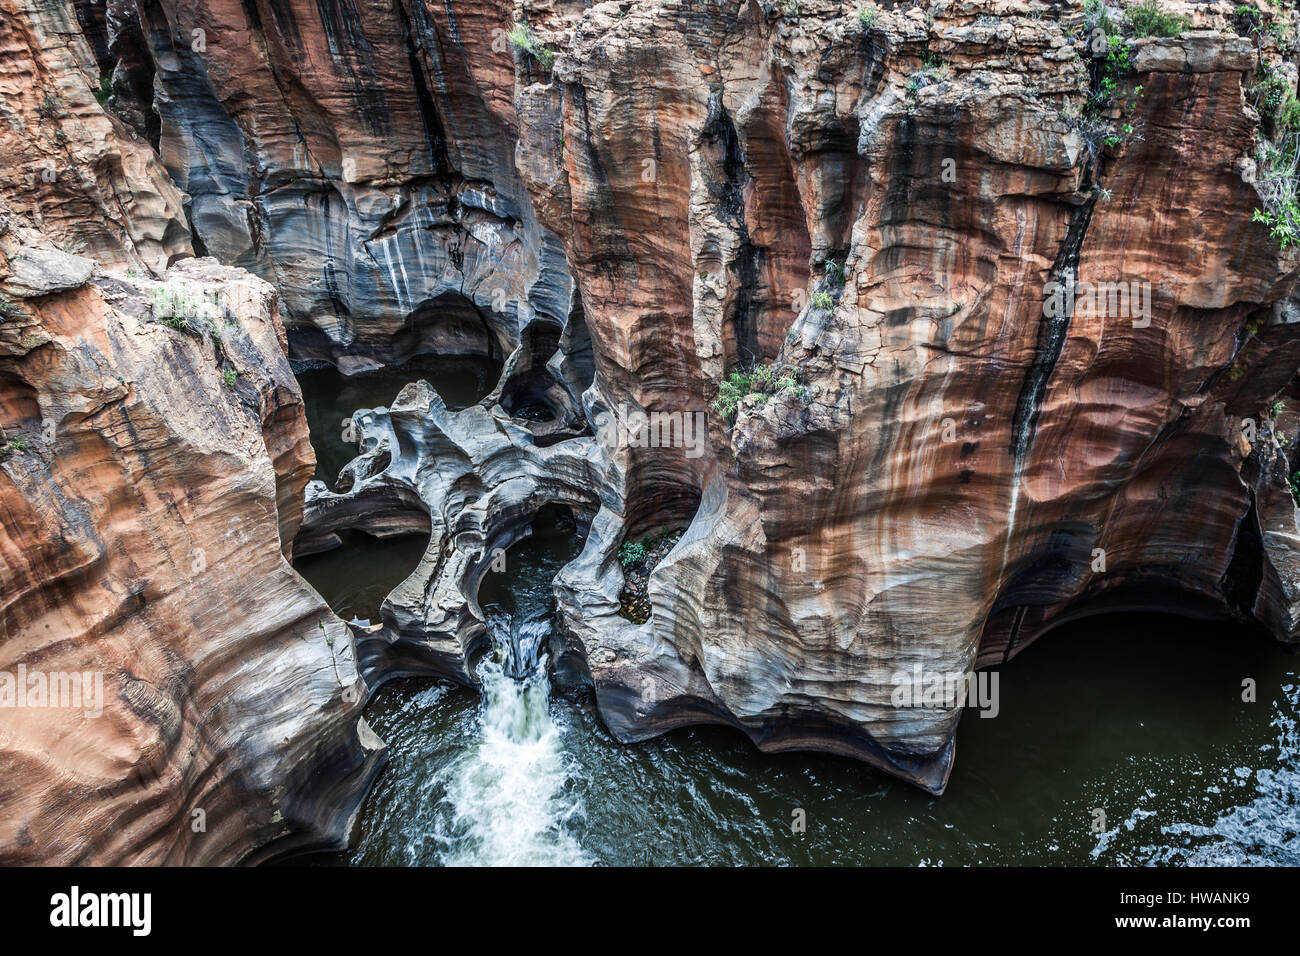 Bourke's Luck buche sul Panorama Route in Sud Africa sono uno splendido esempio di erosione di roccia - un paesaggio formato da migliaia di anni. Foto Stock